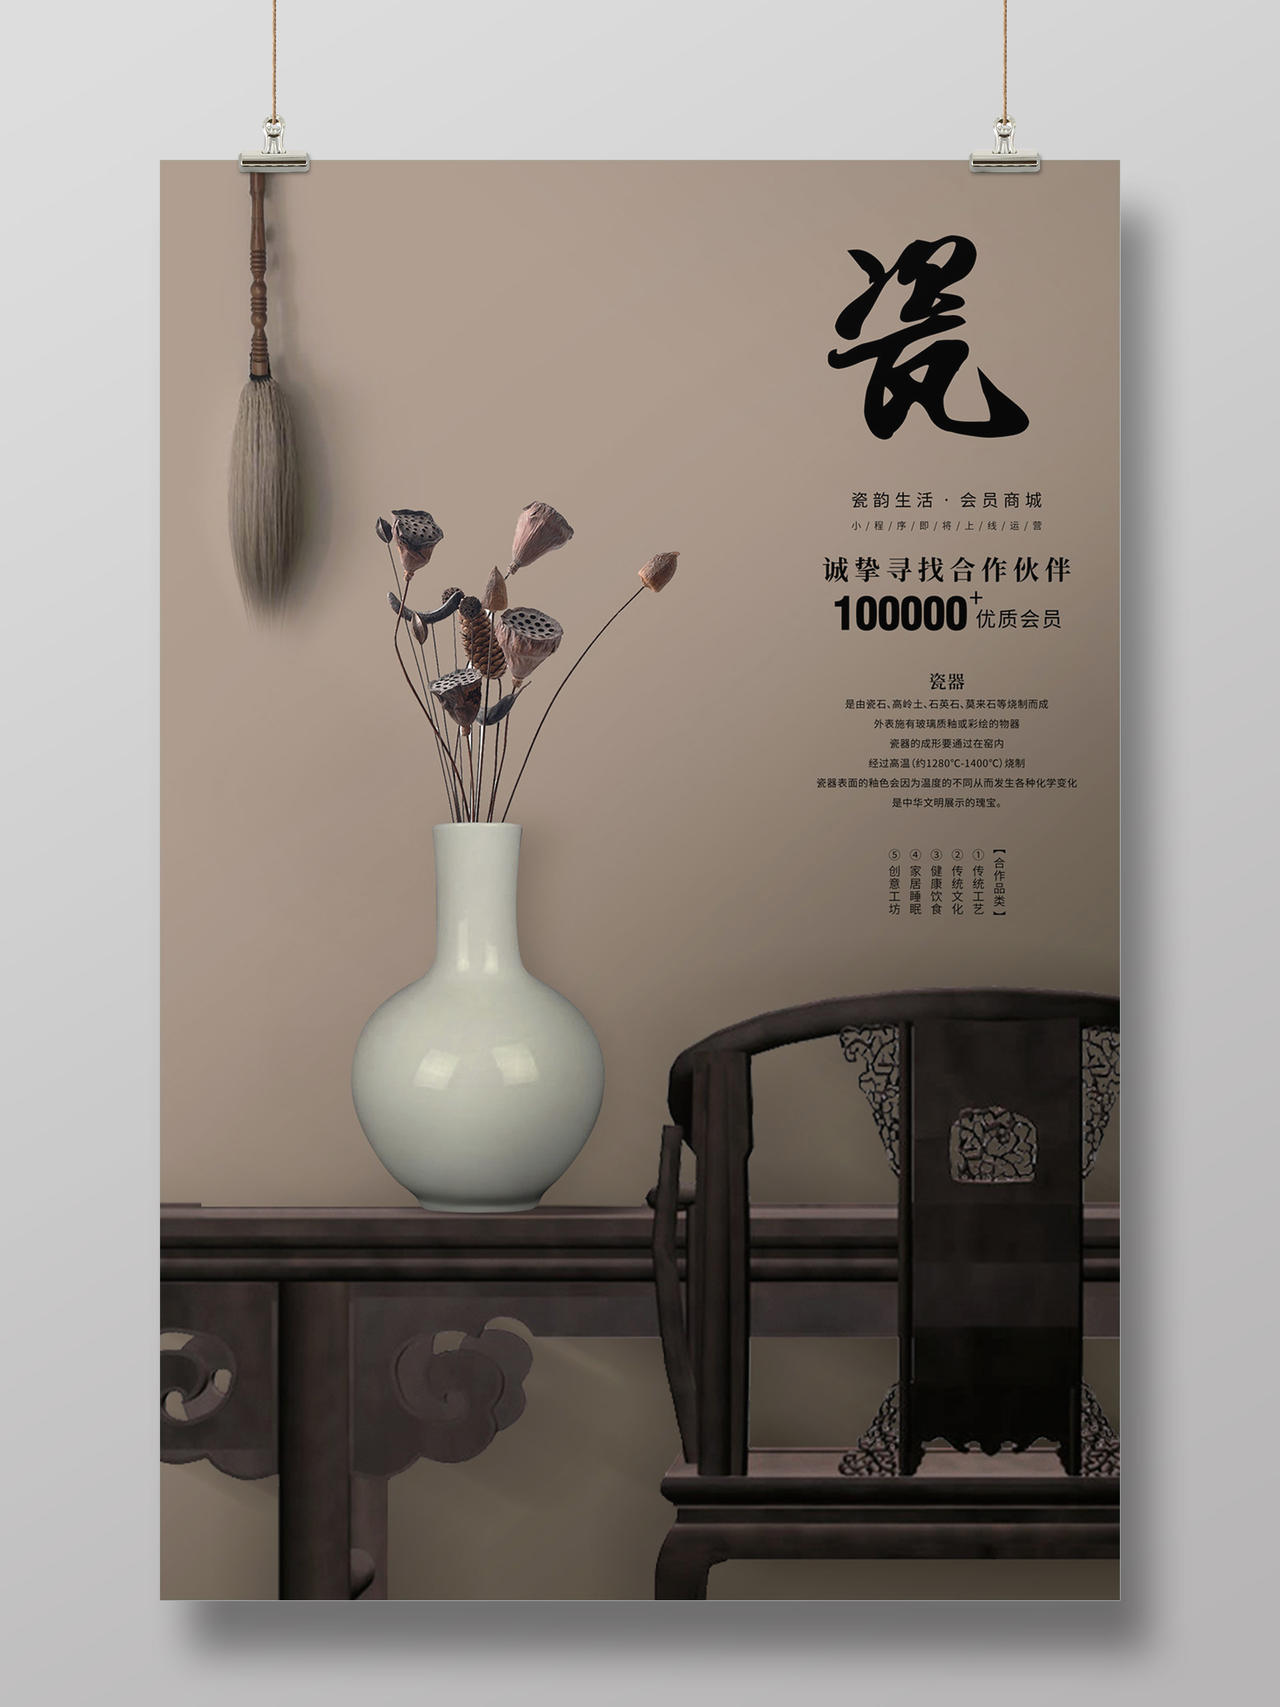 褐色简约大气中国风陶瓷招募合作伙伴海报